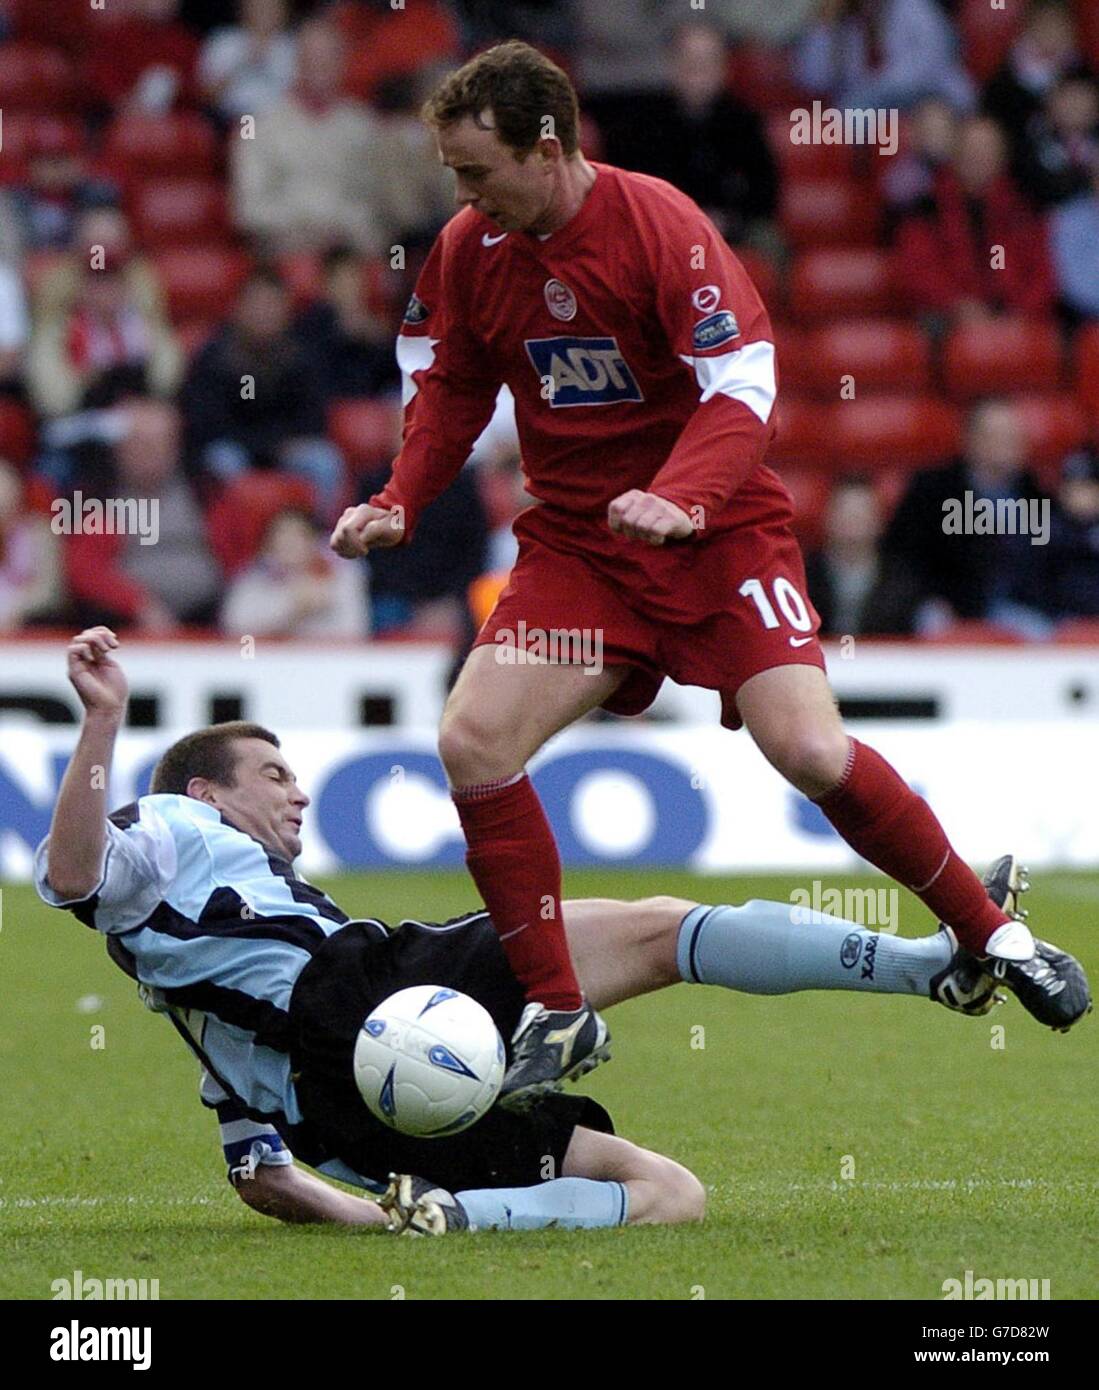 Derek Adams von Aberdeen fordert Barry Smith von Dundee während ihres Spiels der Bank of Scotland Scottish Premier League im Pittodrie Stadium, Aberdeen, am Samstag, den 2. Oktober 2004, heraus. NUR FÜR REDAKTIONELLE ZWECKE. Stockfoto